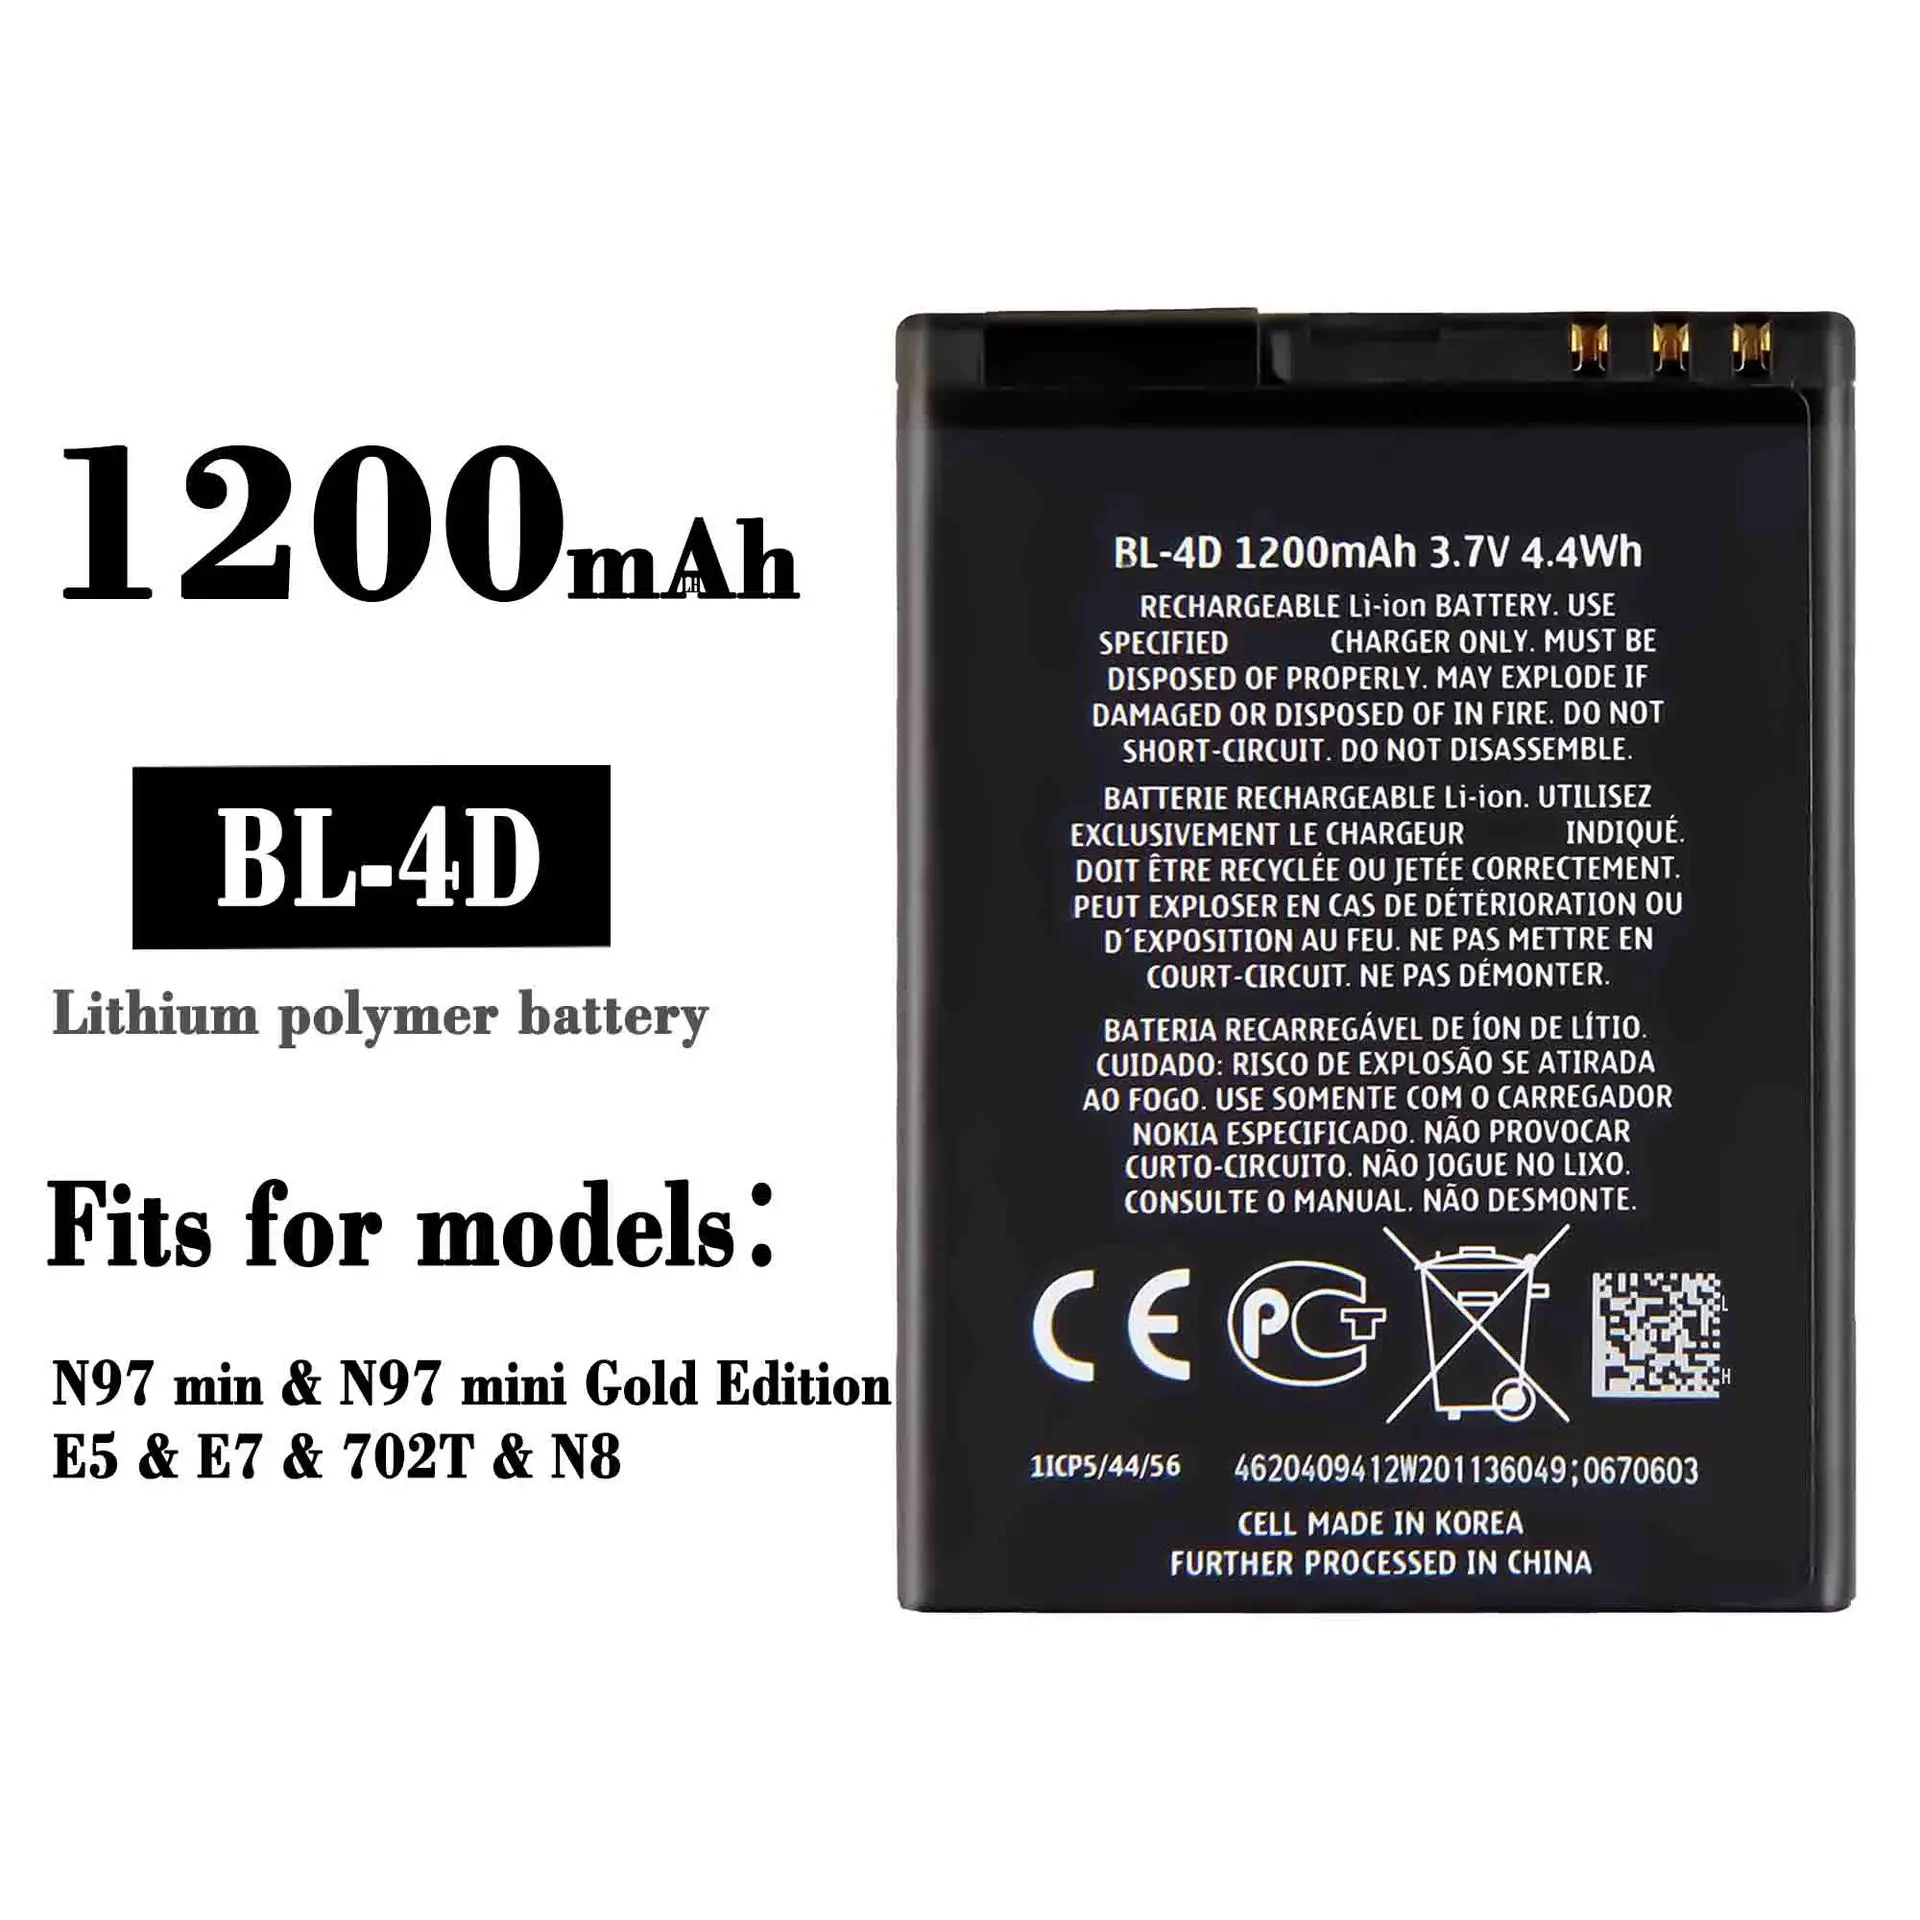 

Suitable for Nok ia NOKIAN97MIN / N97MINI / E5 / E7 / 702T BL-4D mobile phone battery